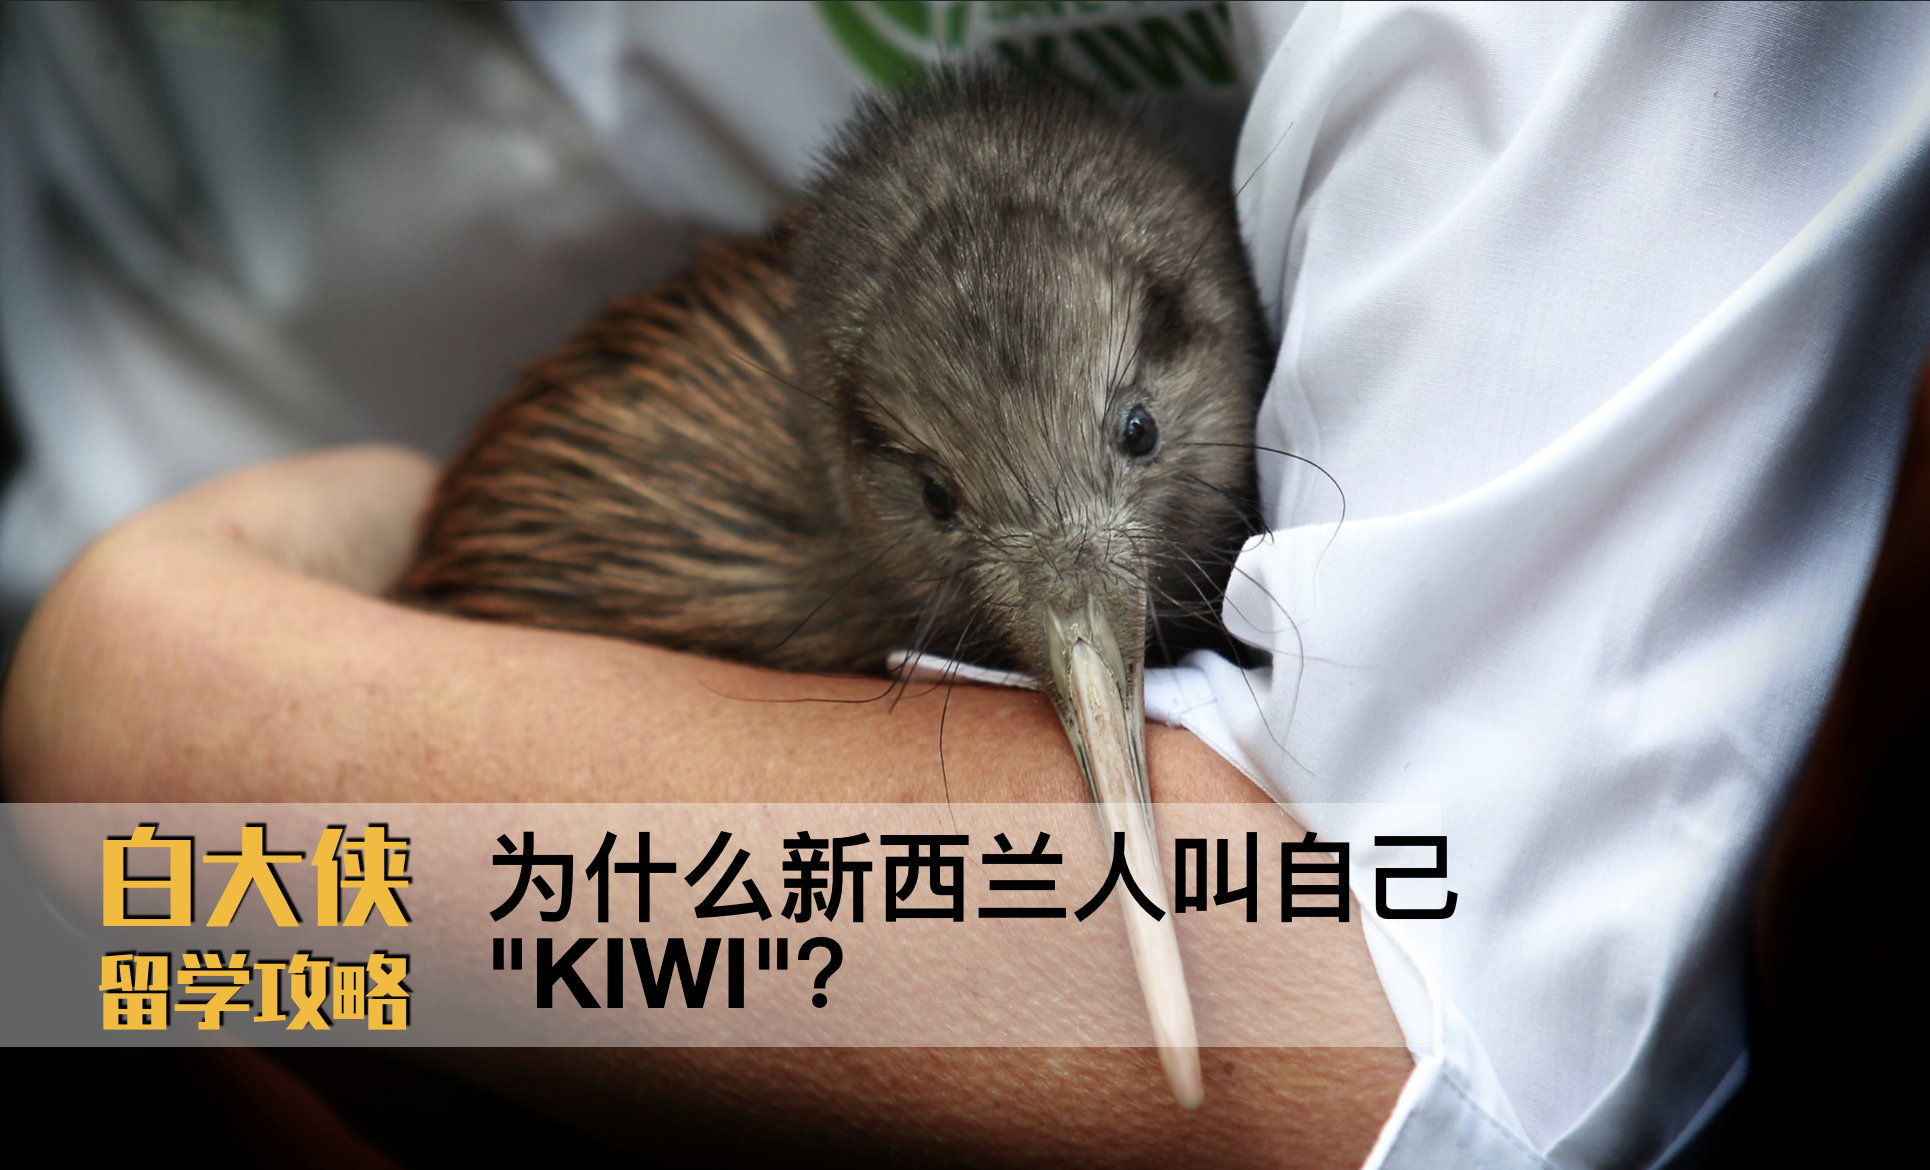 为什么新西兰人叫自己kiwi